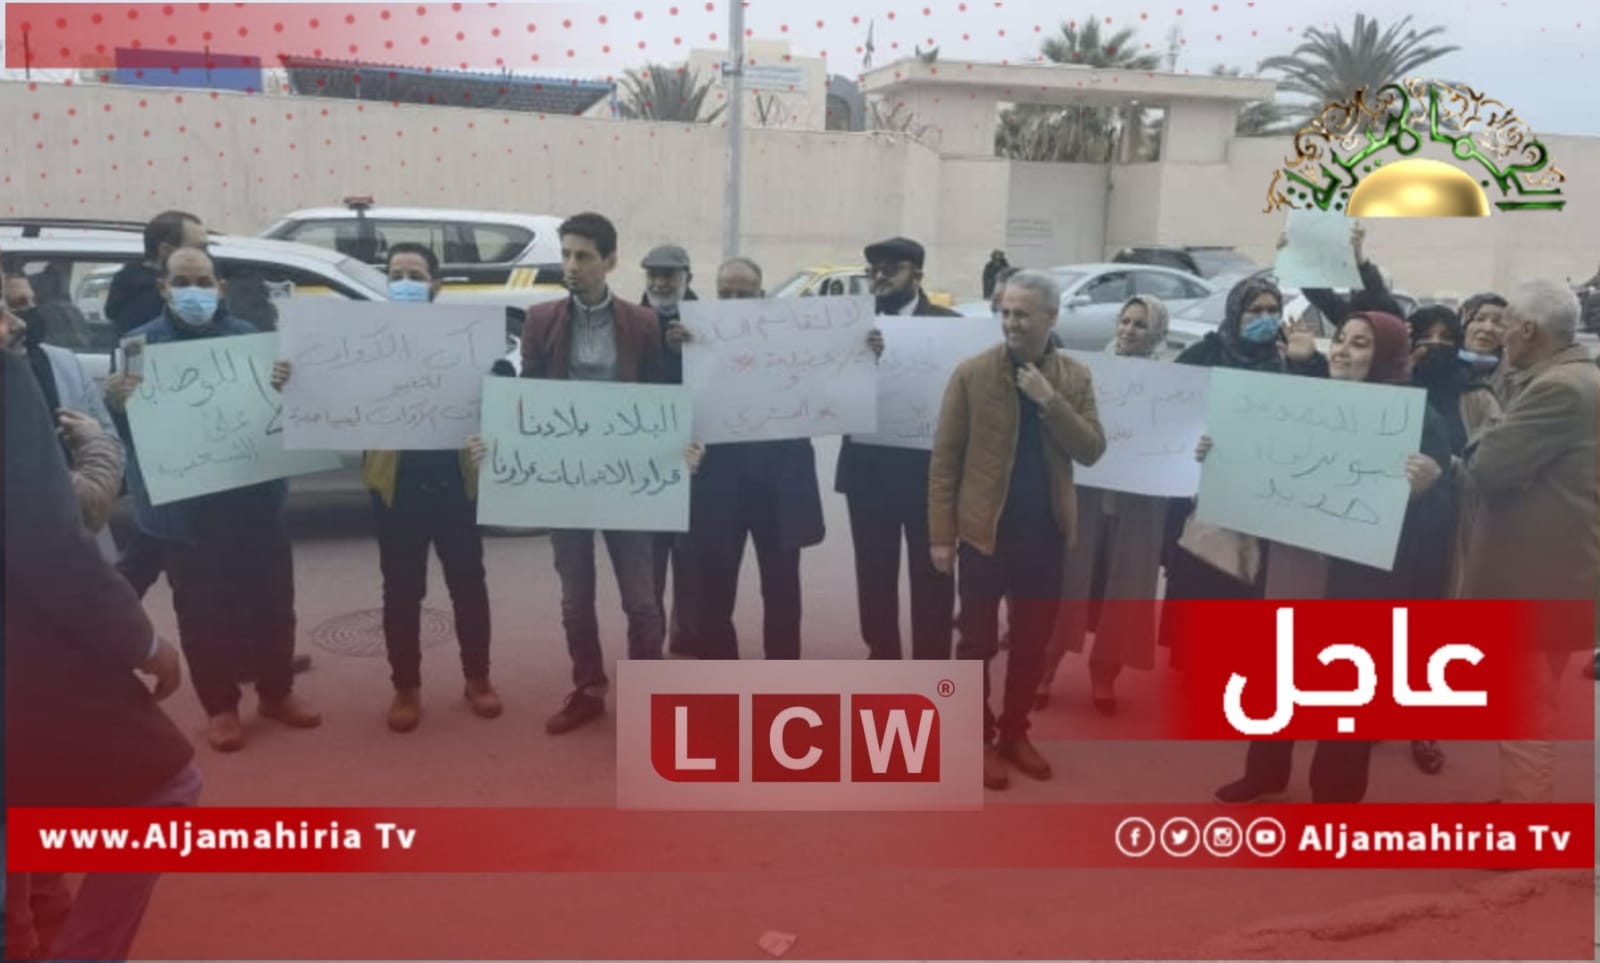 عاجل| منظمة رصد الجرائم: المتظاهرون تعرضوا للاعتقال التعسفي والدهس والضرب والتهديد